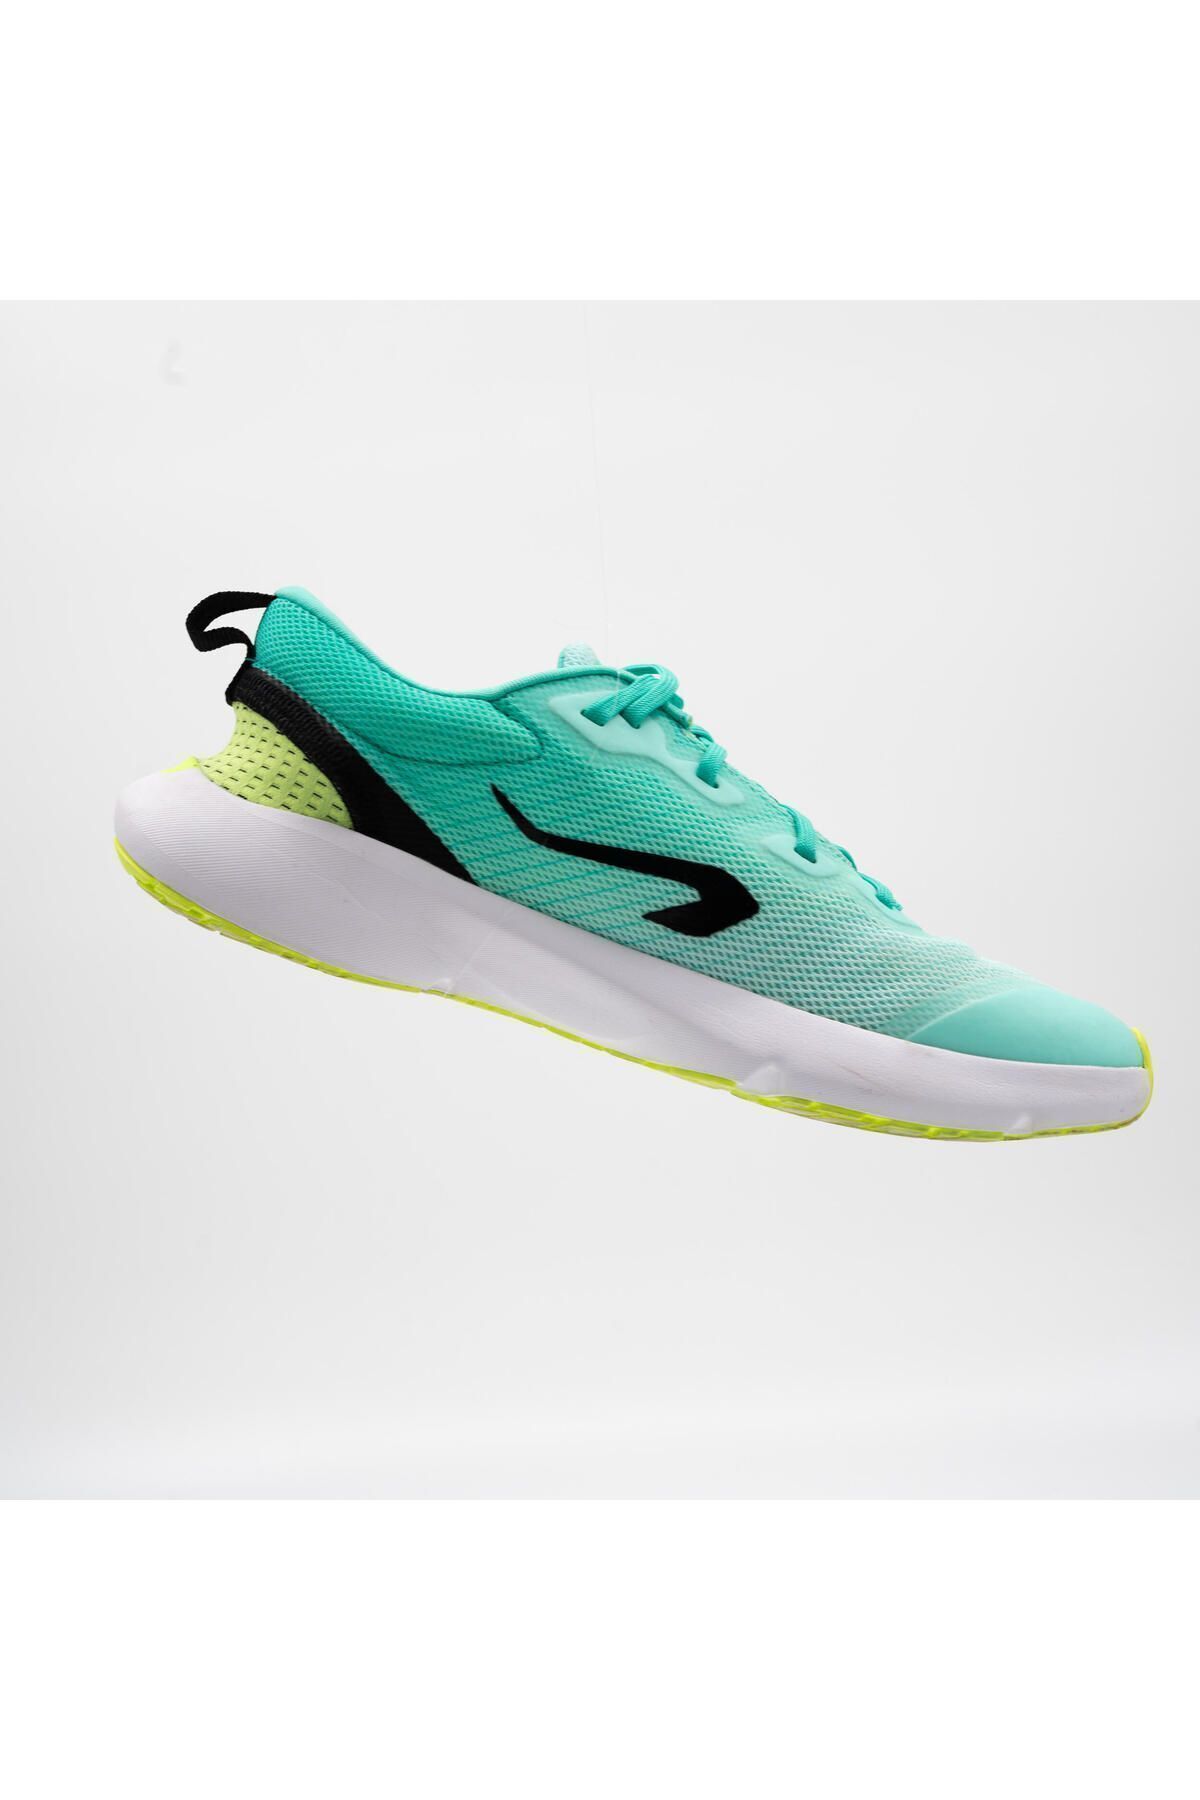 Decathlon Çocuk Koşu Ayakkabısı - 0 Drop - Yeşil / Sarı / Siyah - Kiprun KN500